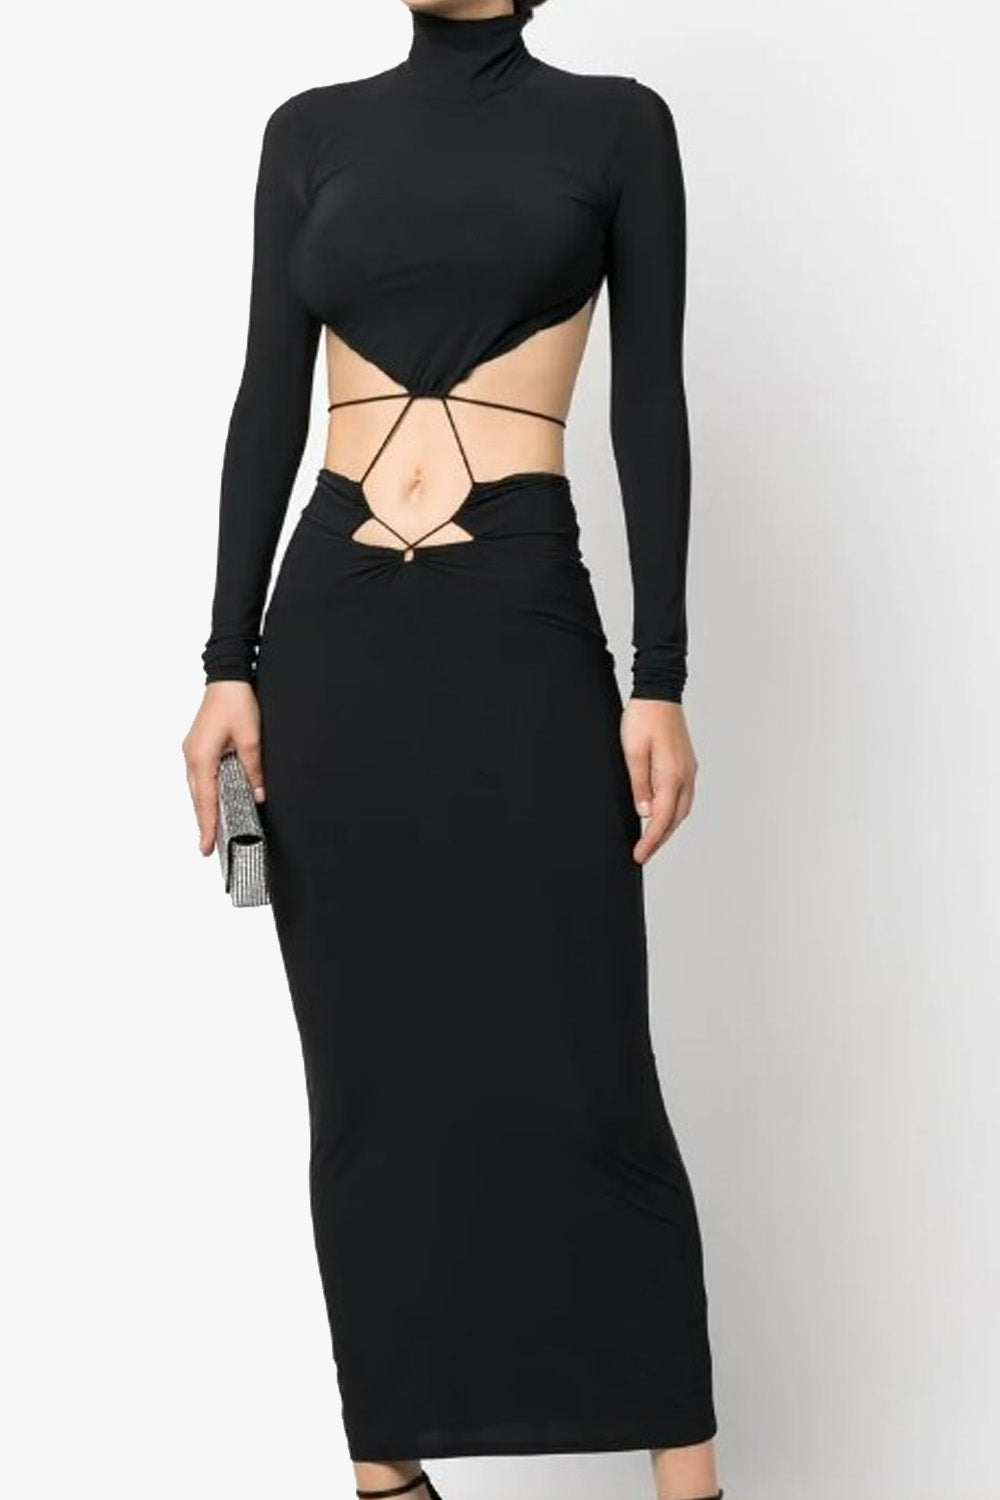 Zinnia Black Dress